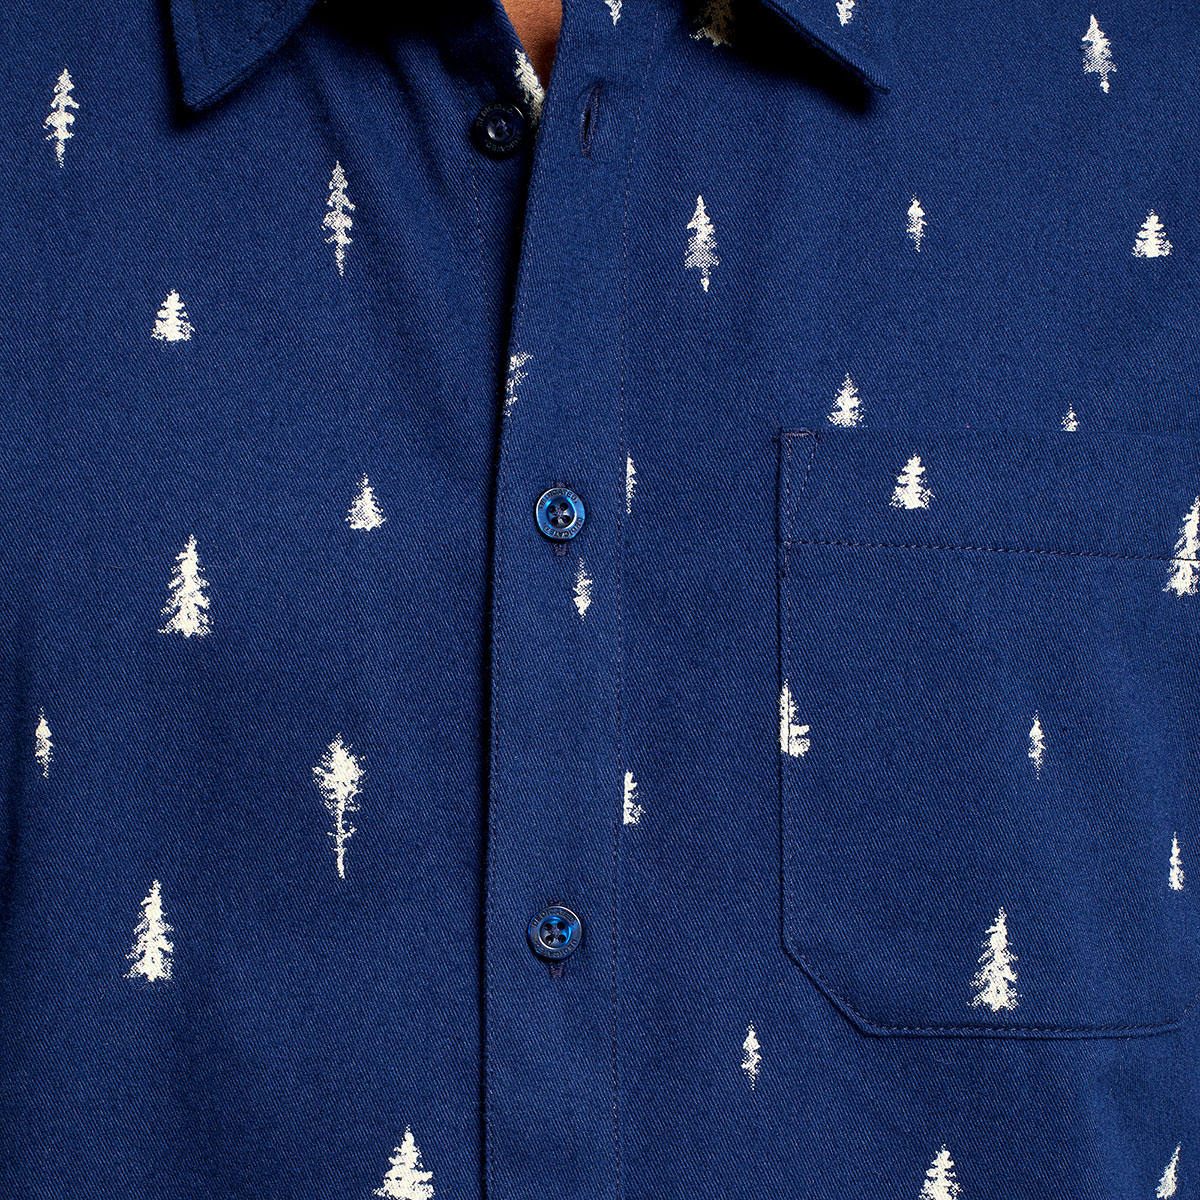 Lässiges dunkelblaues Hemd aus kuscheligem Bio-Baumwollflanell von Dedicated, umweltfreundlich bedruckt mit weißen Nadelbaumsilhouetten.